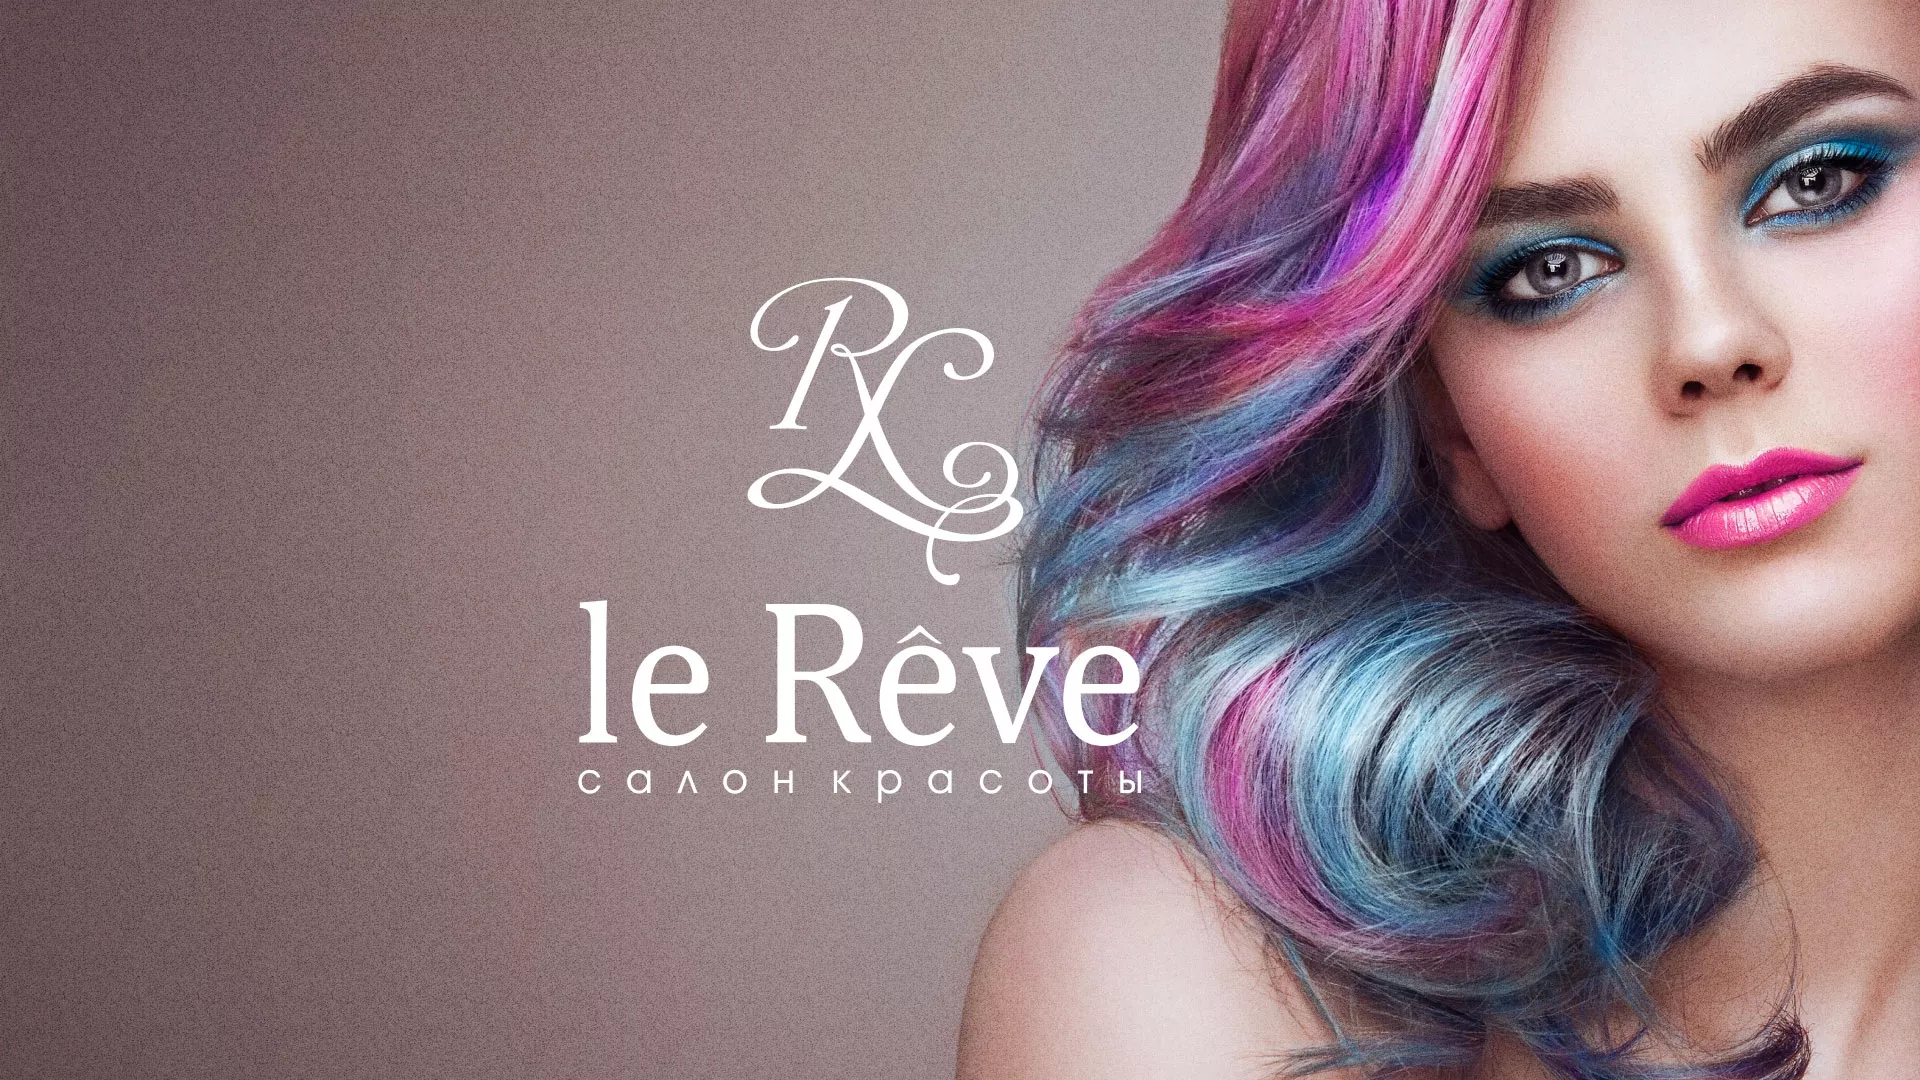 Создание сайта для салона красоты «Le Reve» в Александровске-Сахалинском